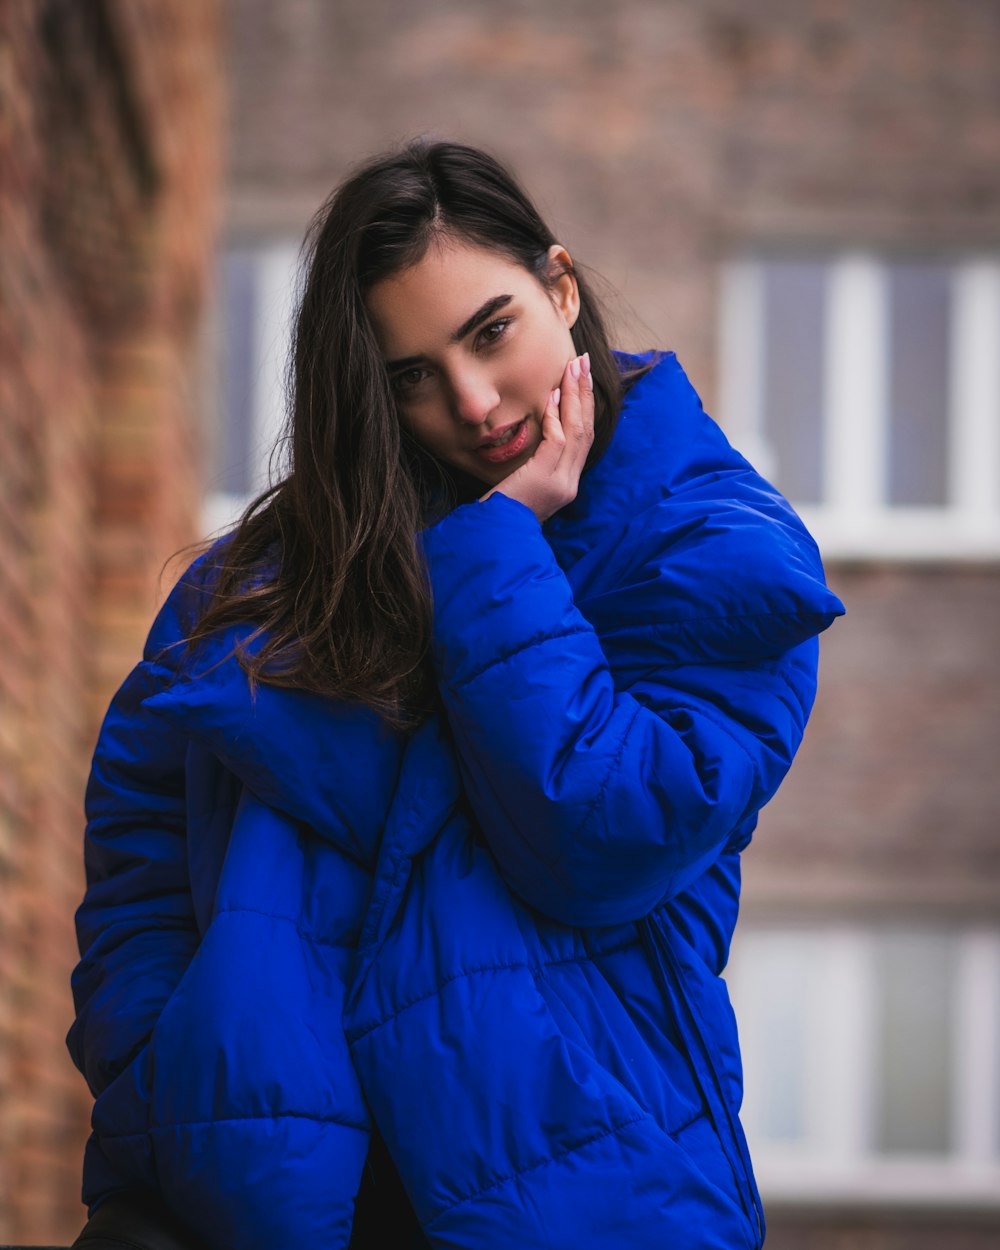 Corrección retroceder jamón Foto Mujer con chaqueta azul – Imagen Retrato gratis en Unsplash